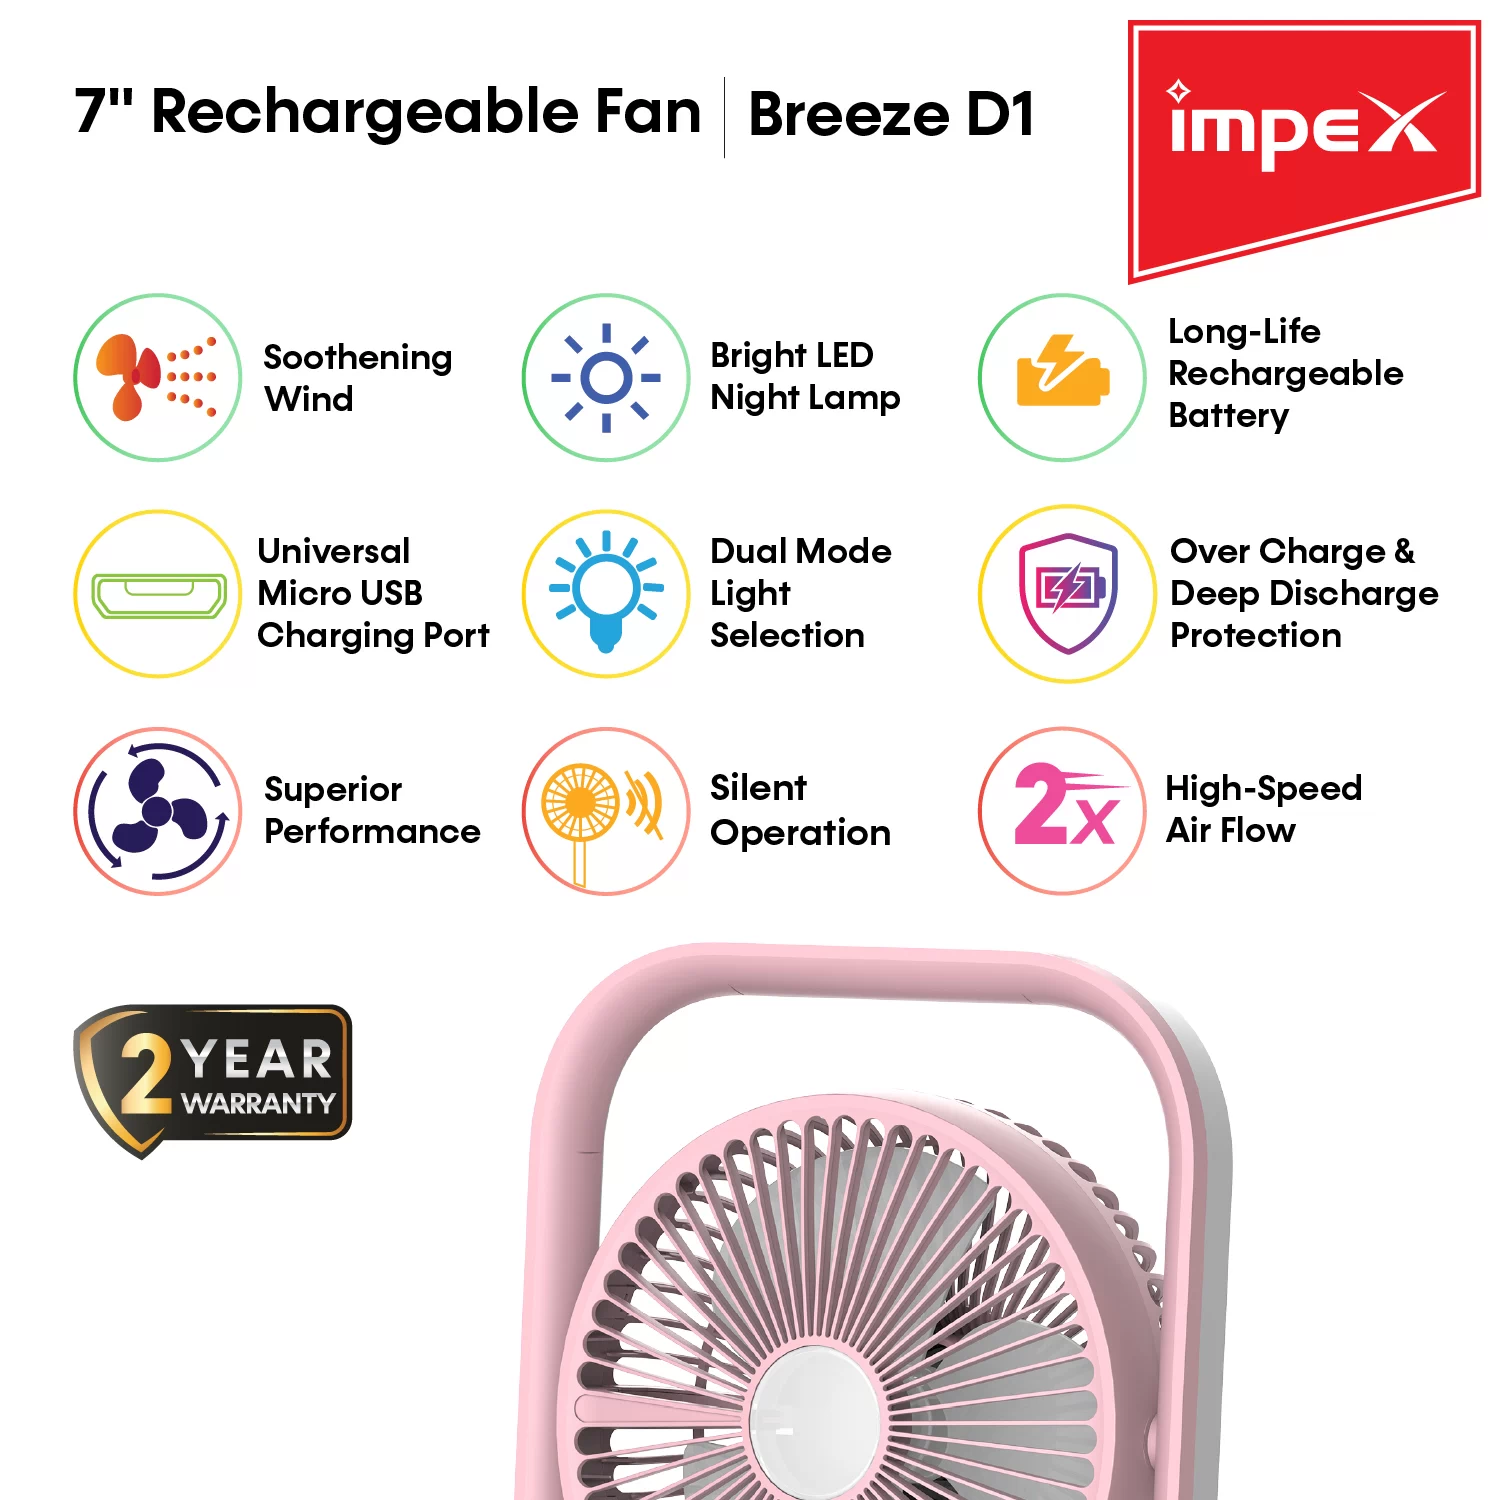 Rechargeable Fan | Breeze D1